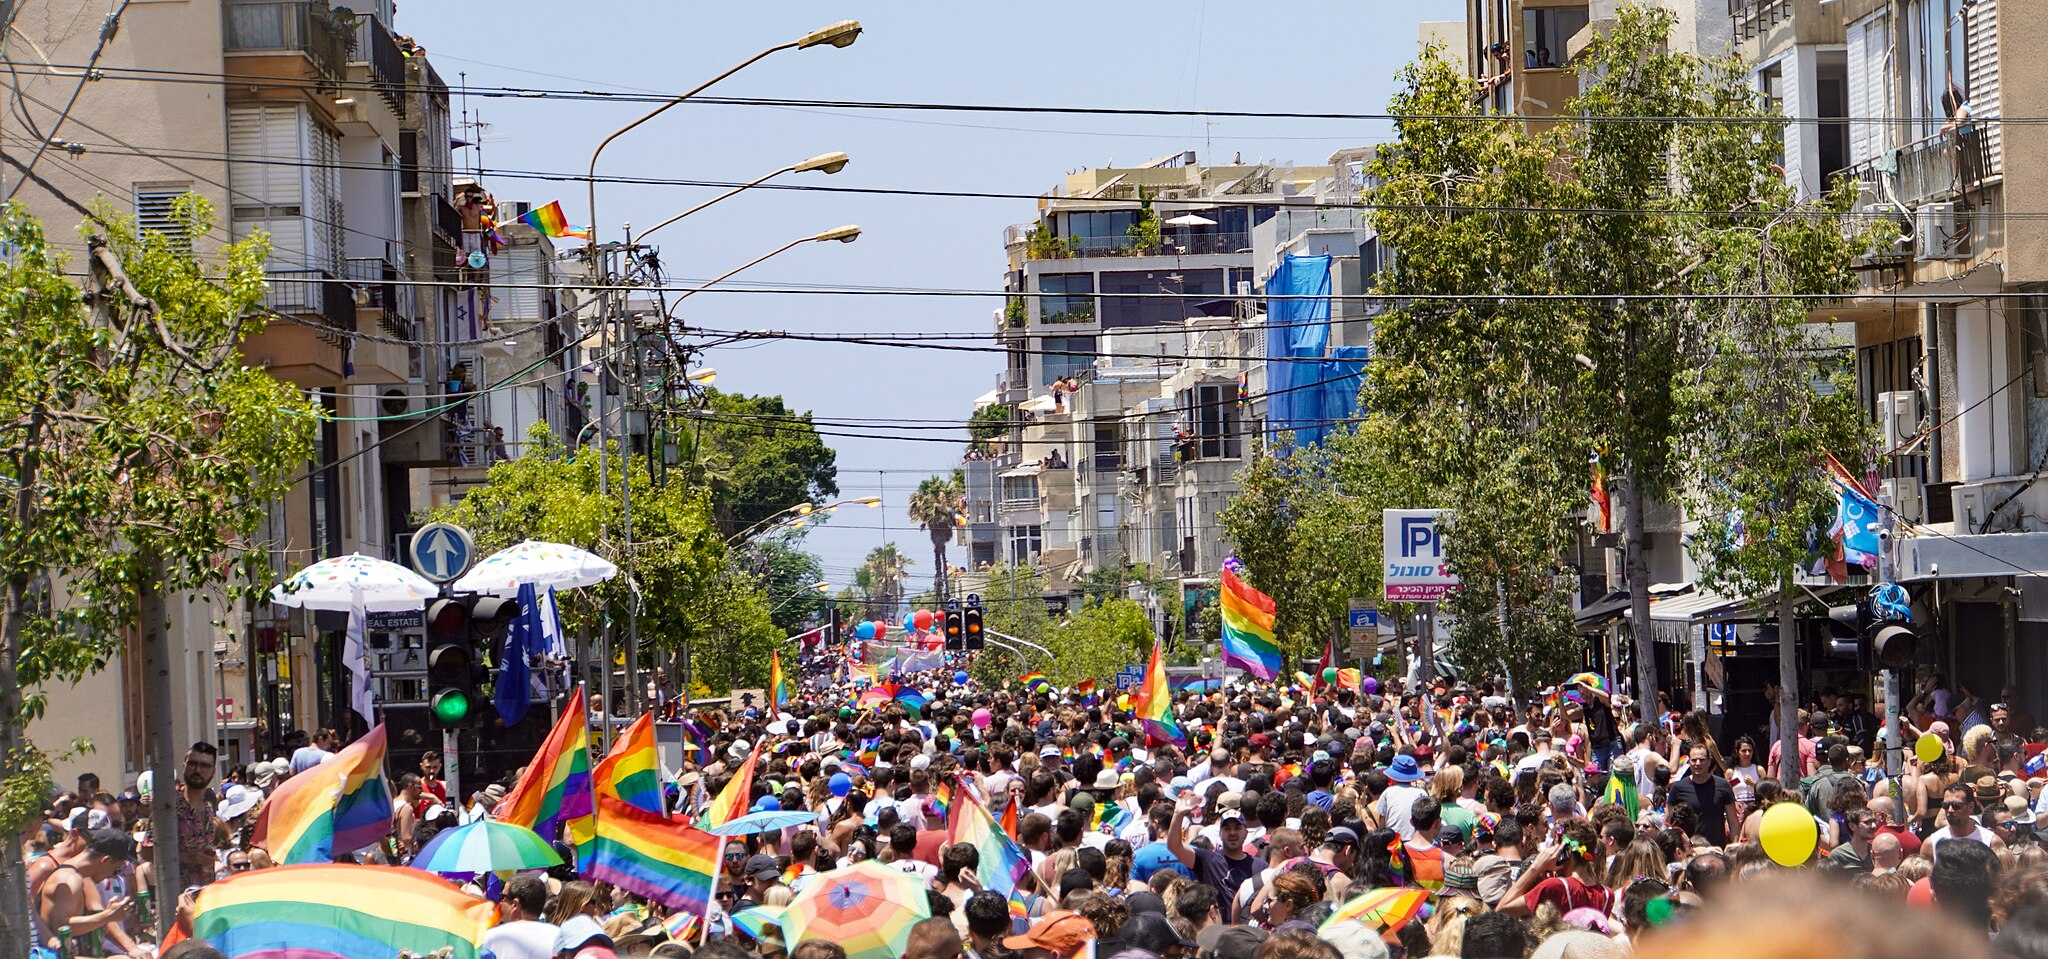 Registro fotográfico de la Marcha del Orgullo en Tel Aviv, el 14 de junio de 2019. Foto: Ted Eytan/CC BY-SA 2.0, via Wikimedia Commons.